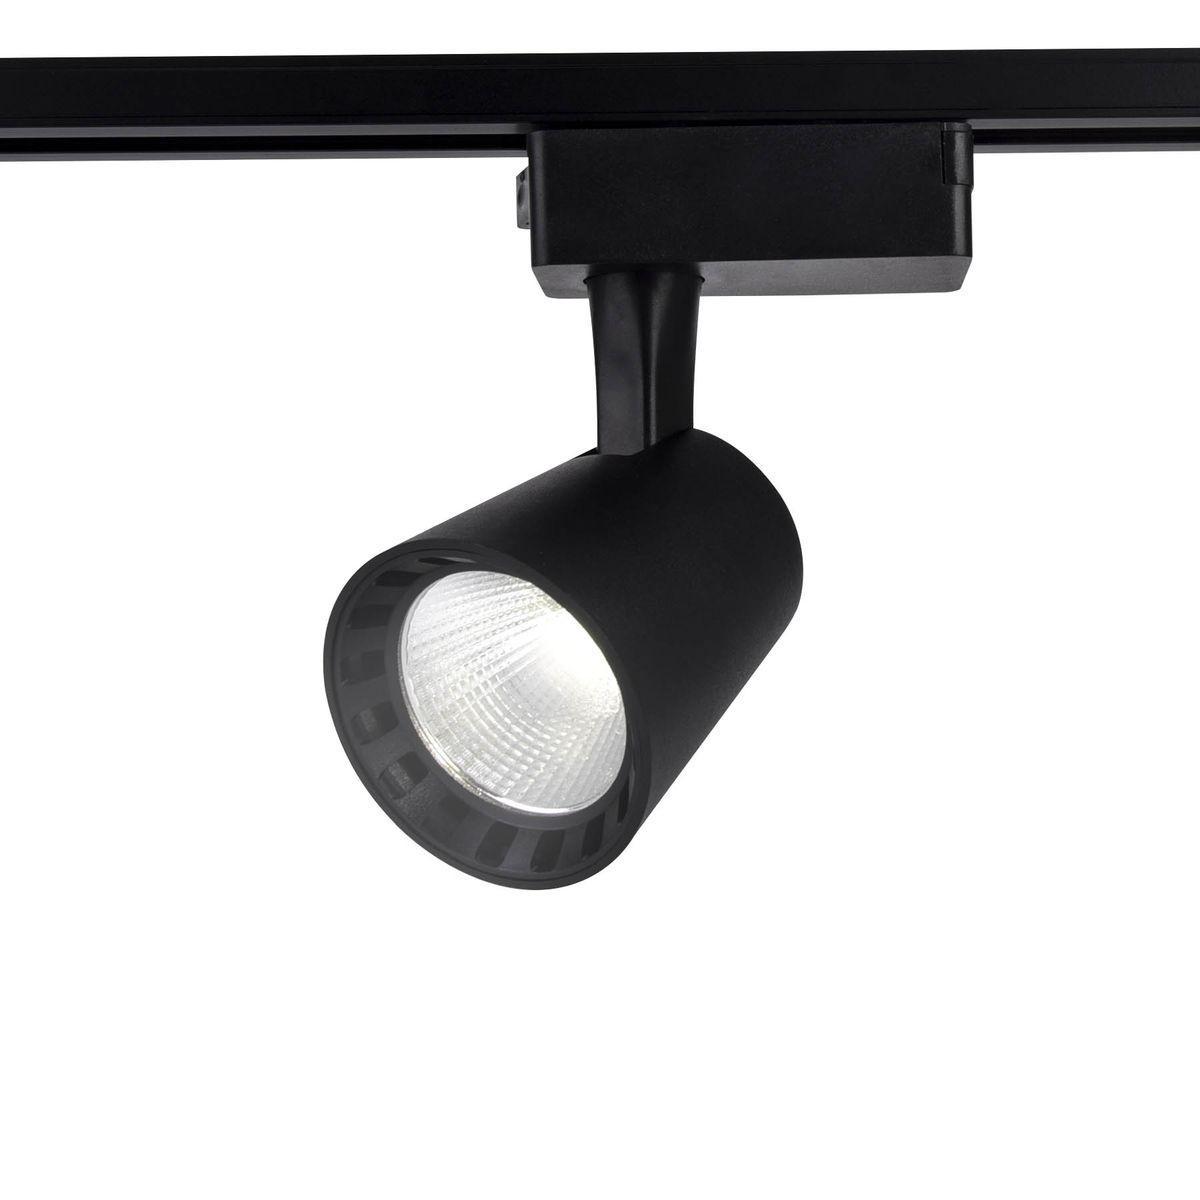 Трековый светодиодный светильник Ambrella light Track System GL5977 factory price head light auto lighting system 81150 06c70 81110 06c70 headlamp for toyot camry usa version 2015 2016 2017led